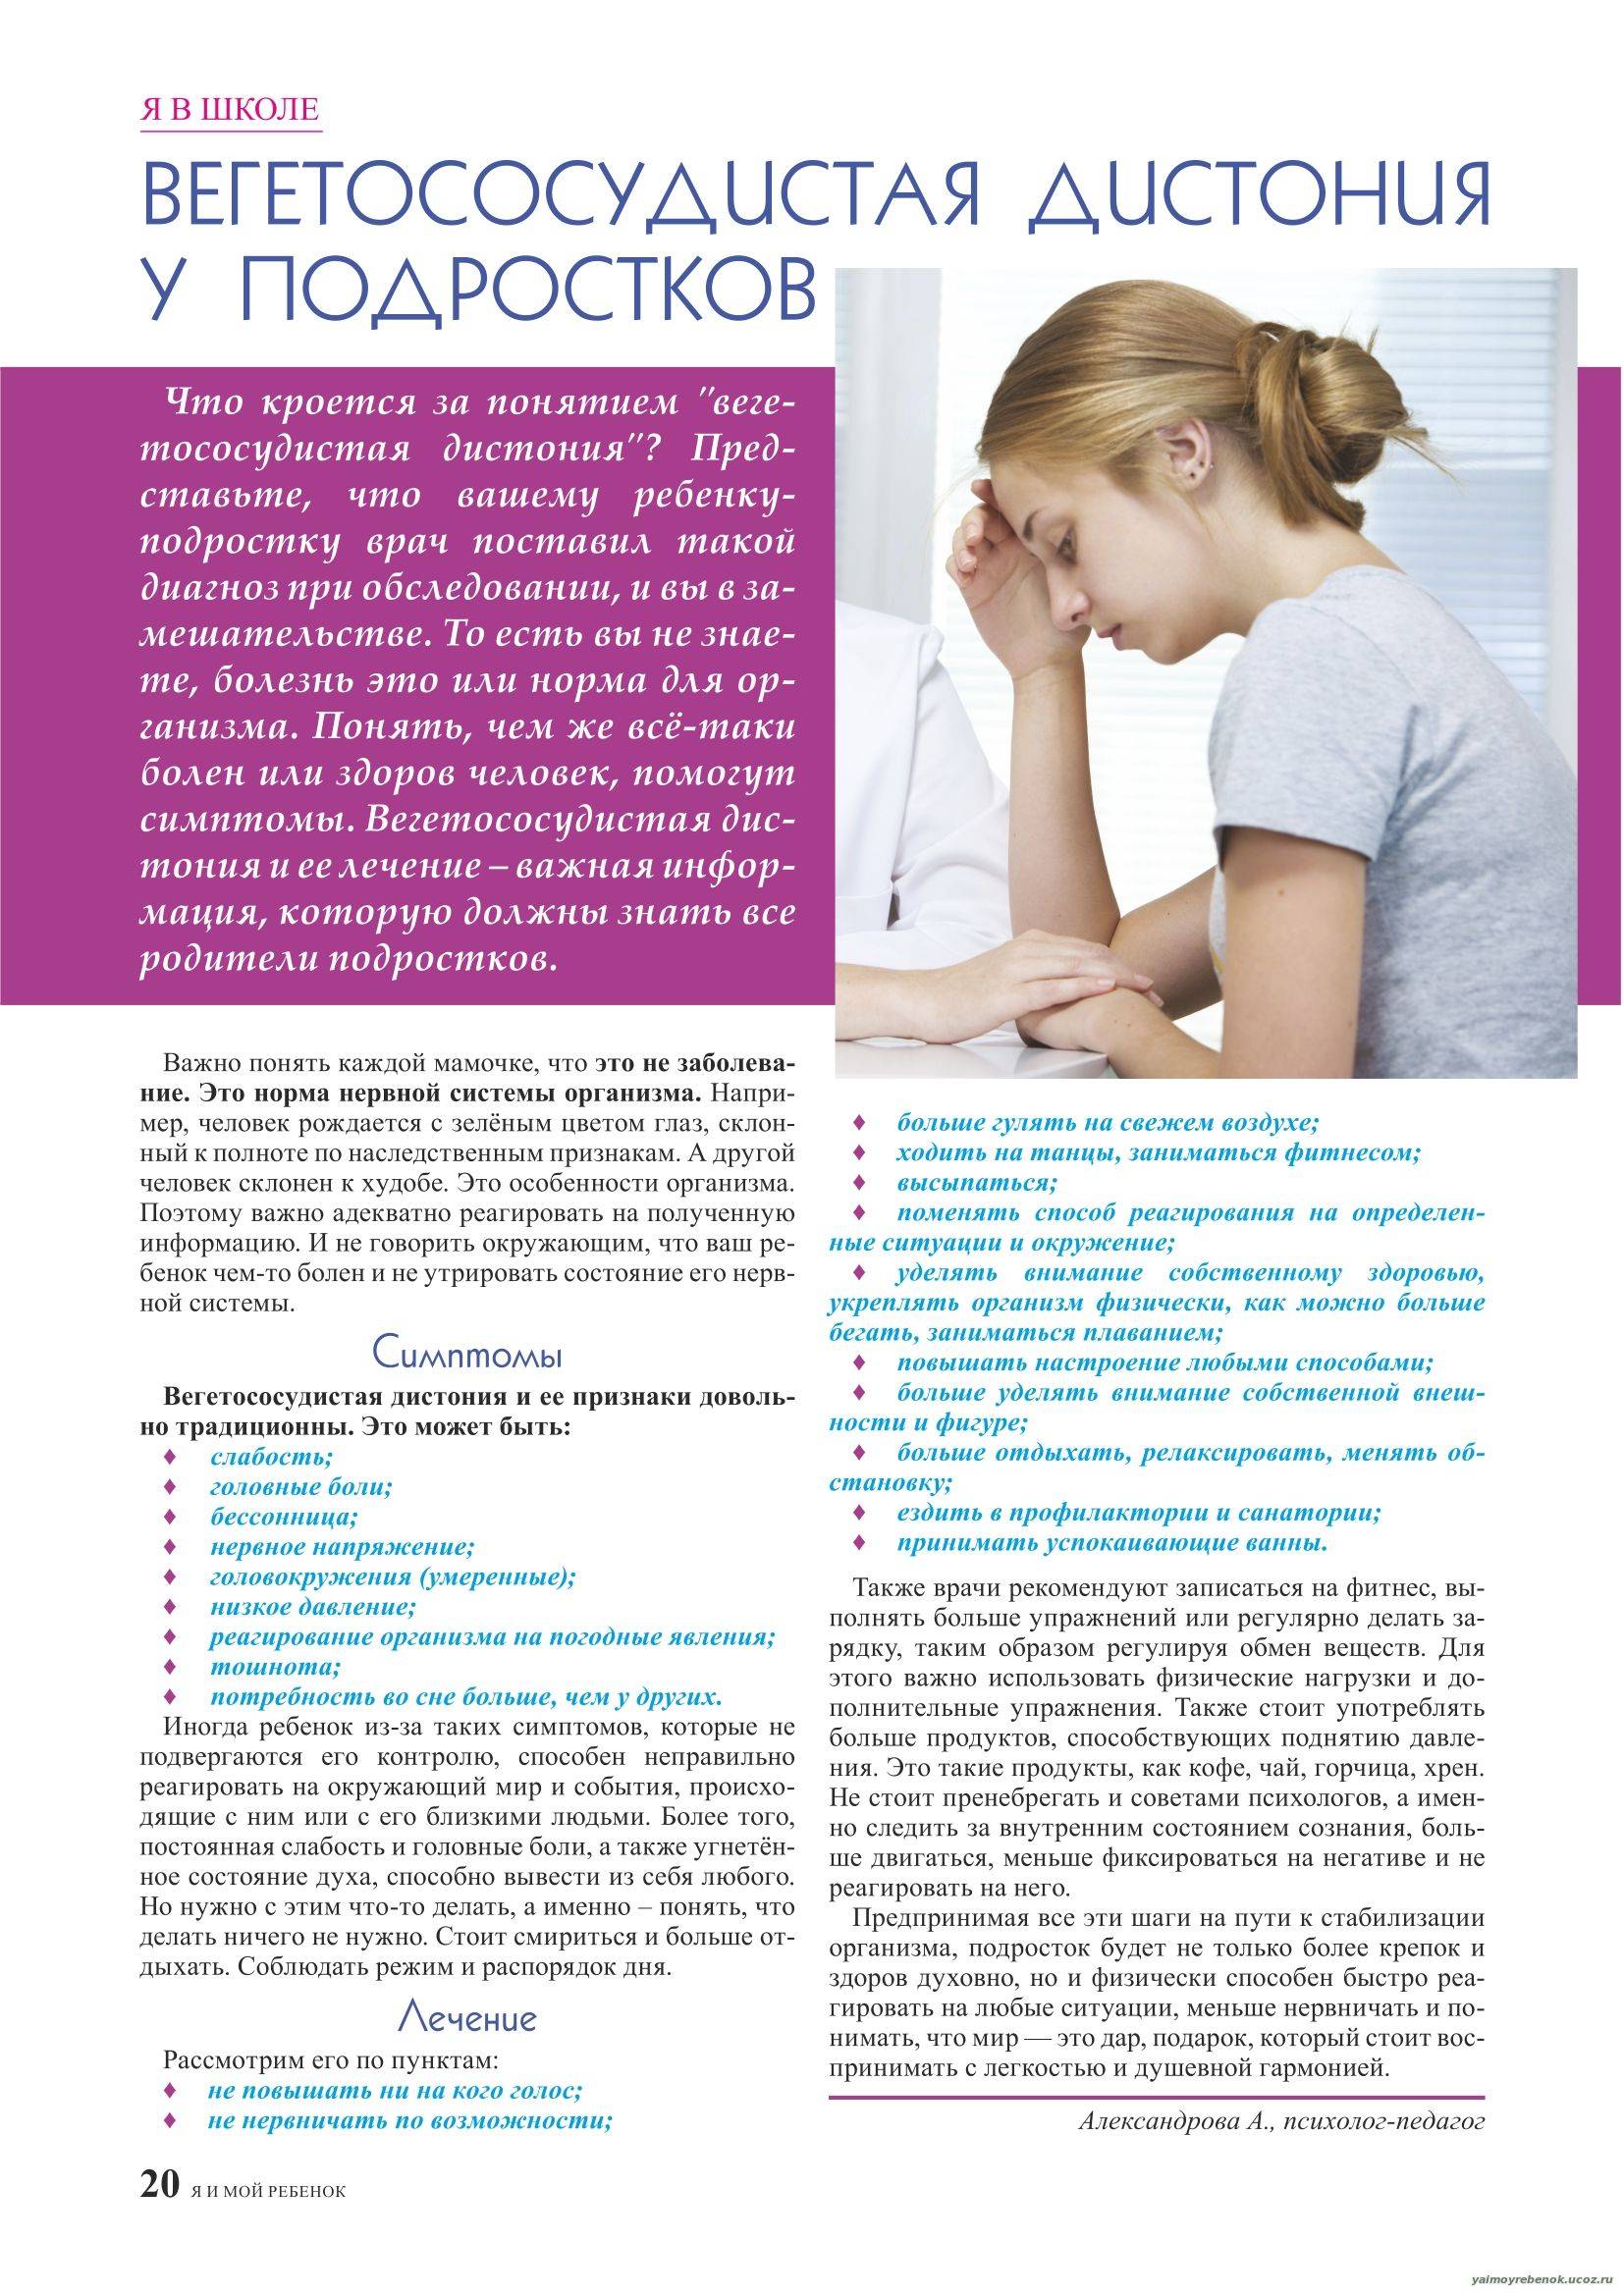 Вегето-сосудистая дистония у детей: симптомы, лечение, профилактика и пр